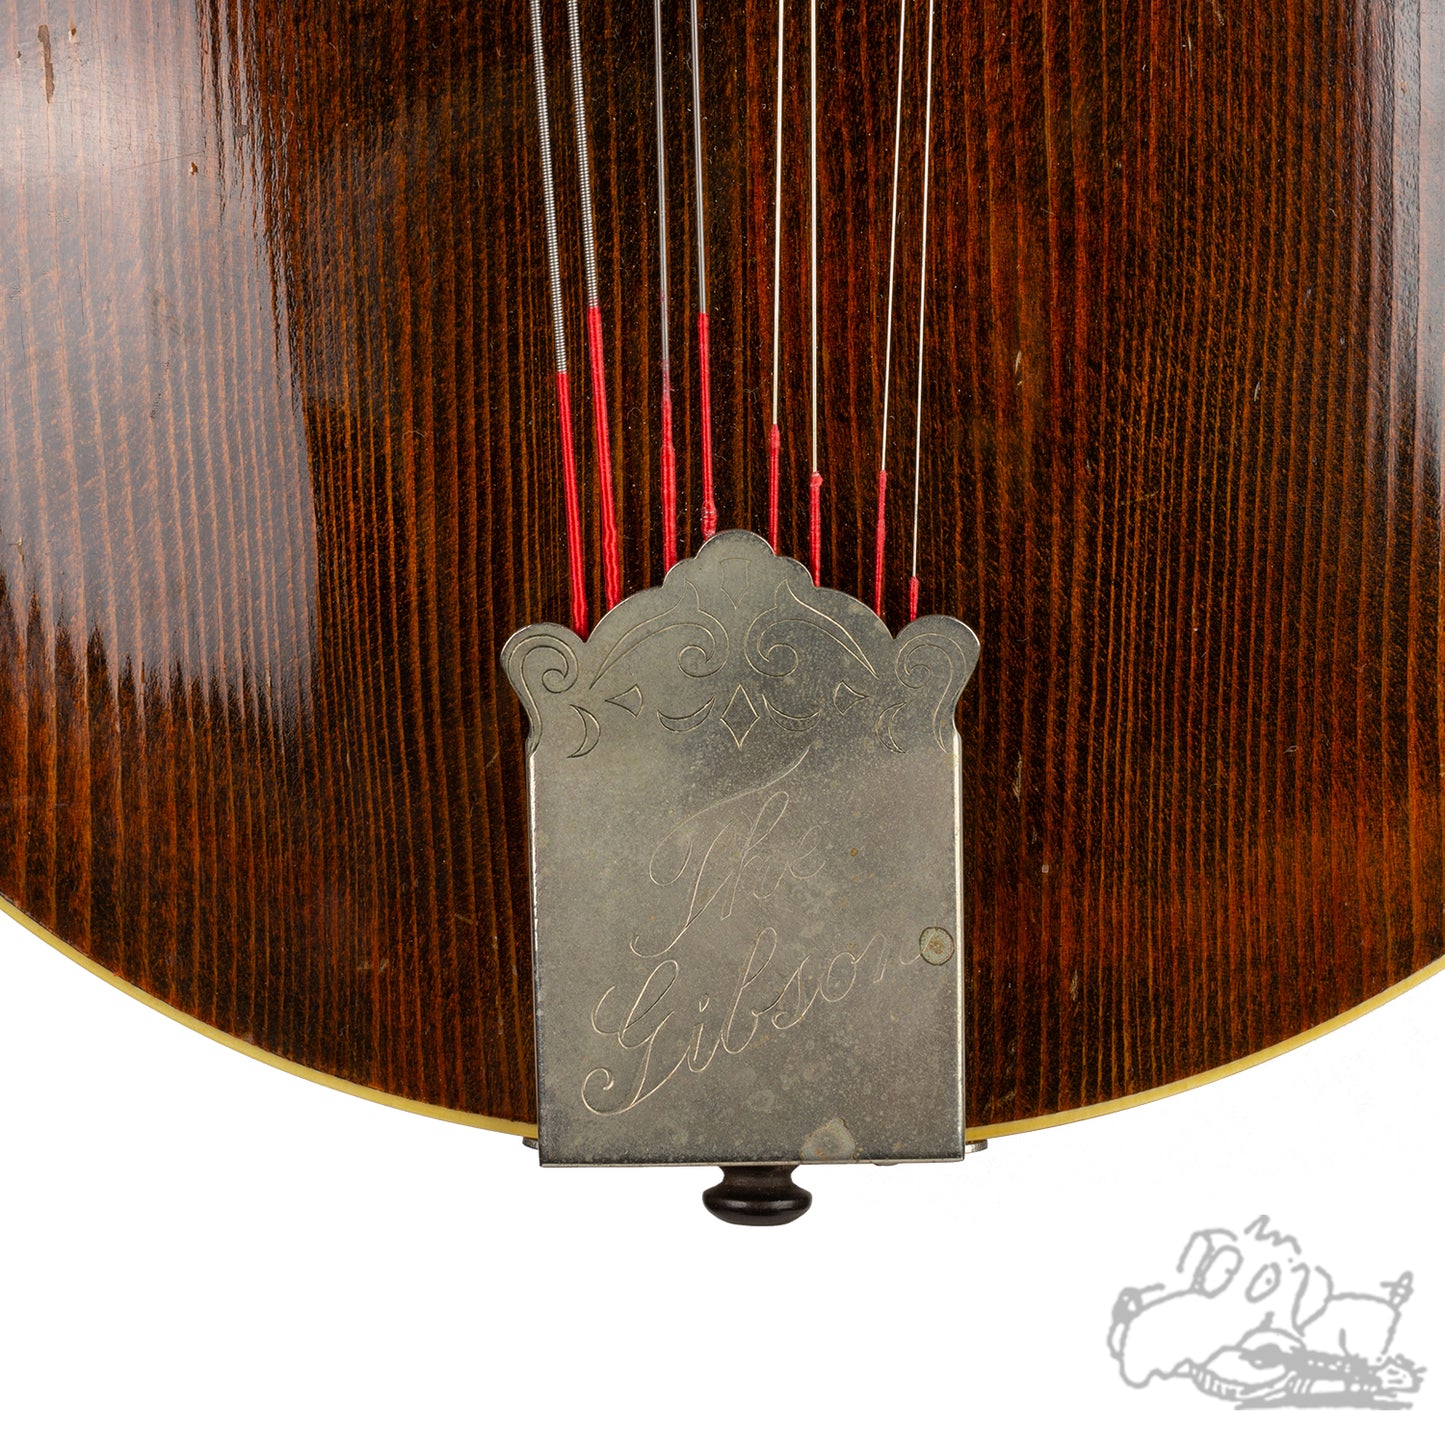 1921 Gibson A2 Mandolin